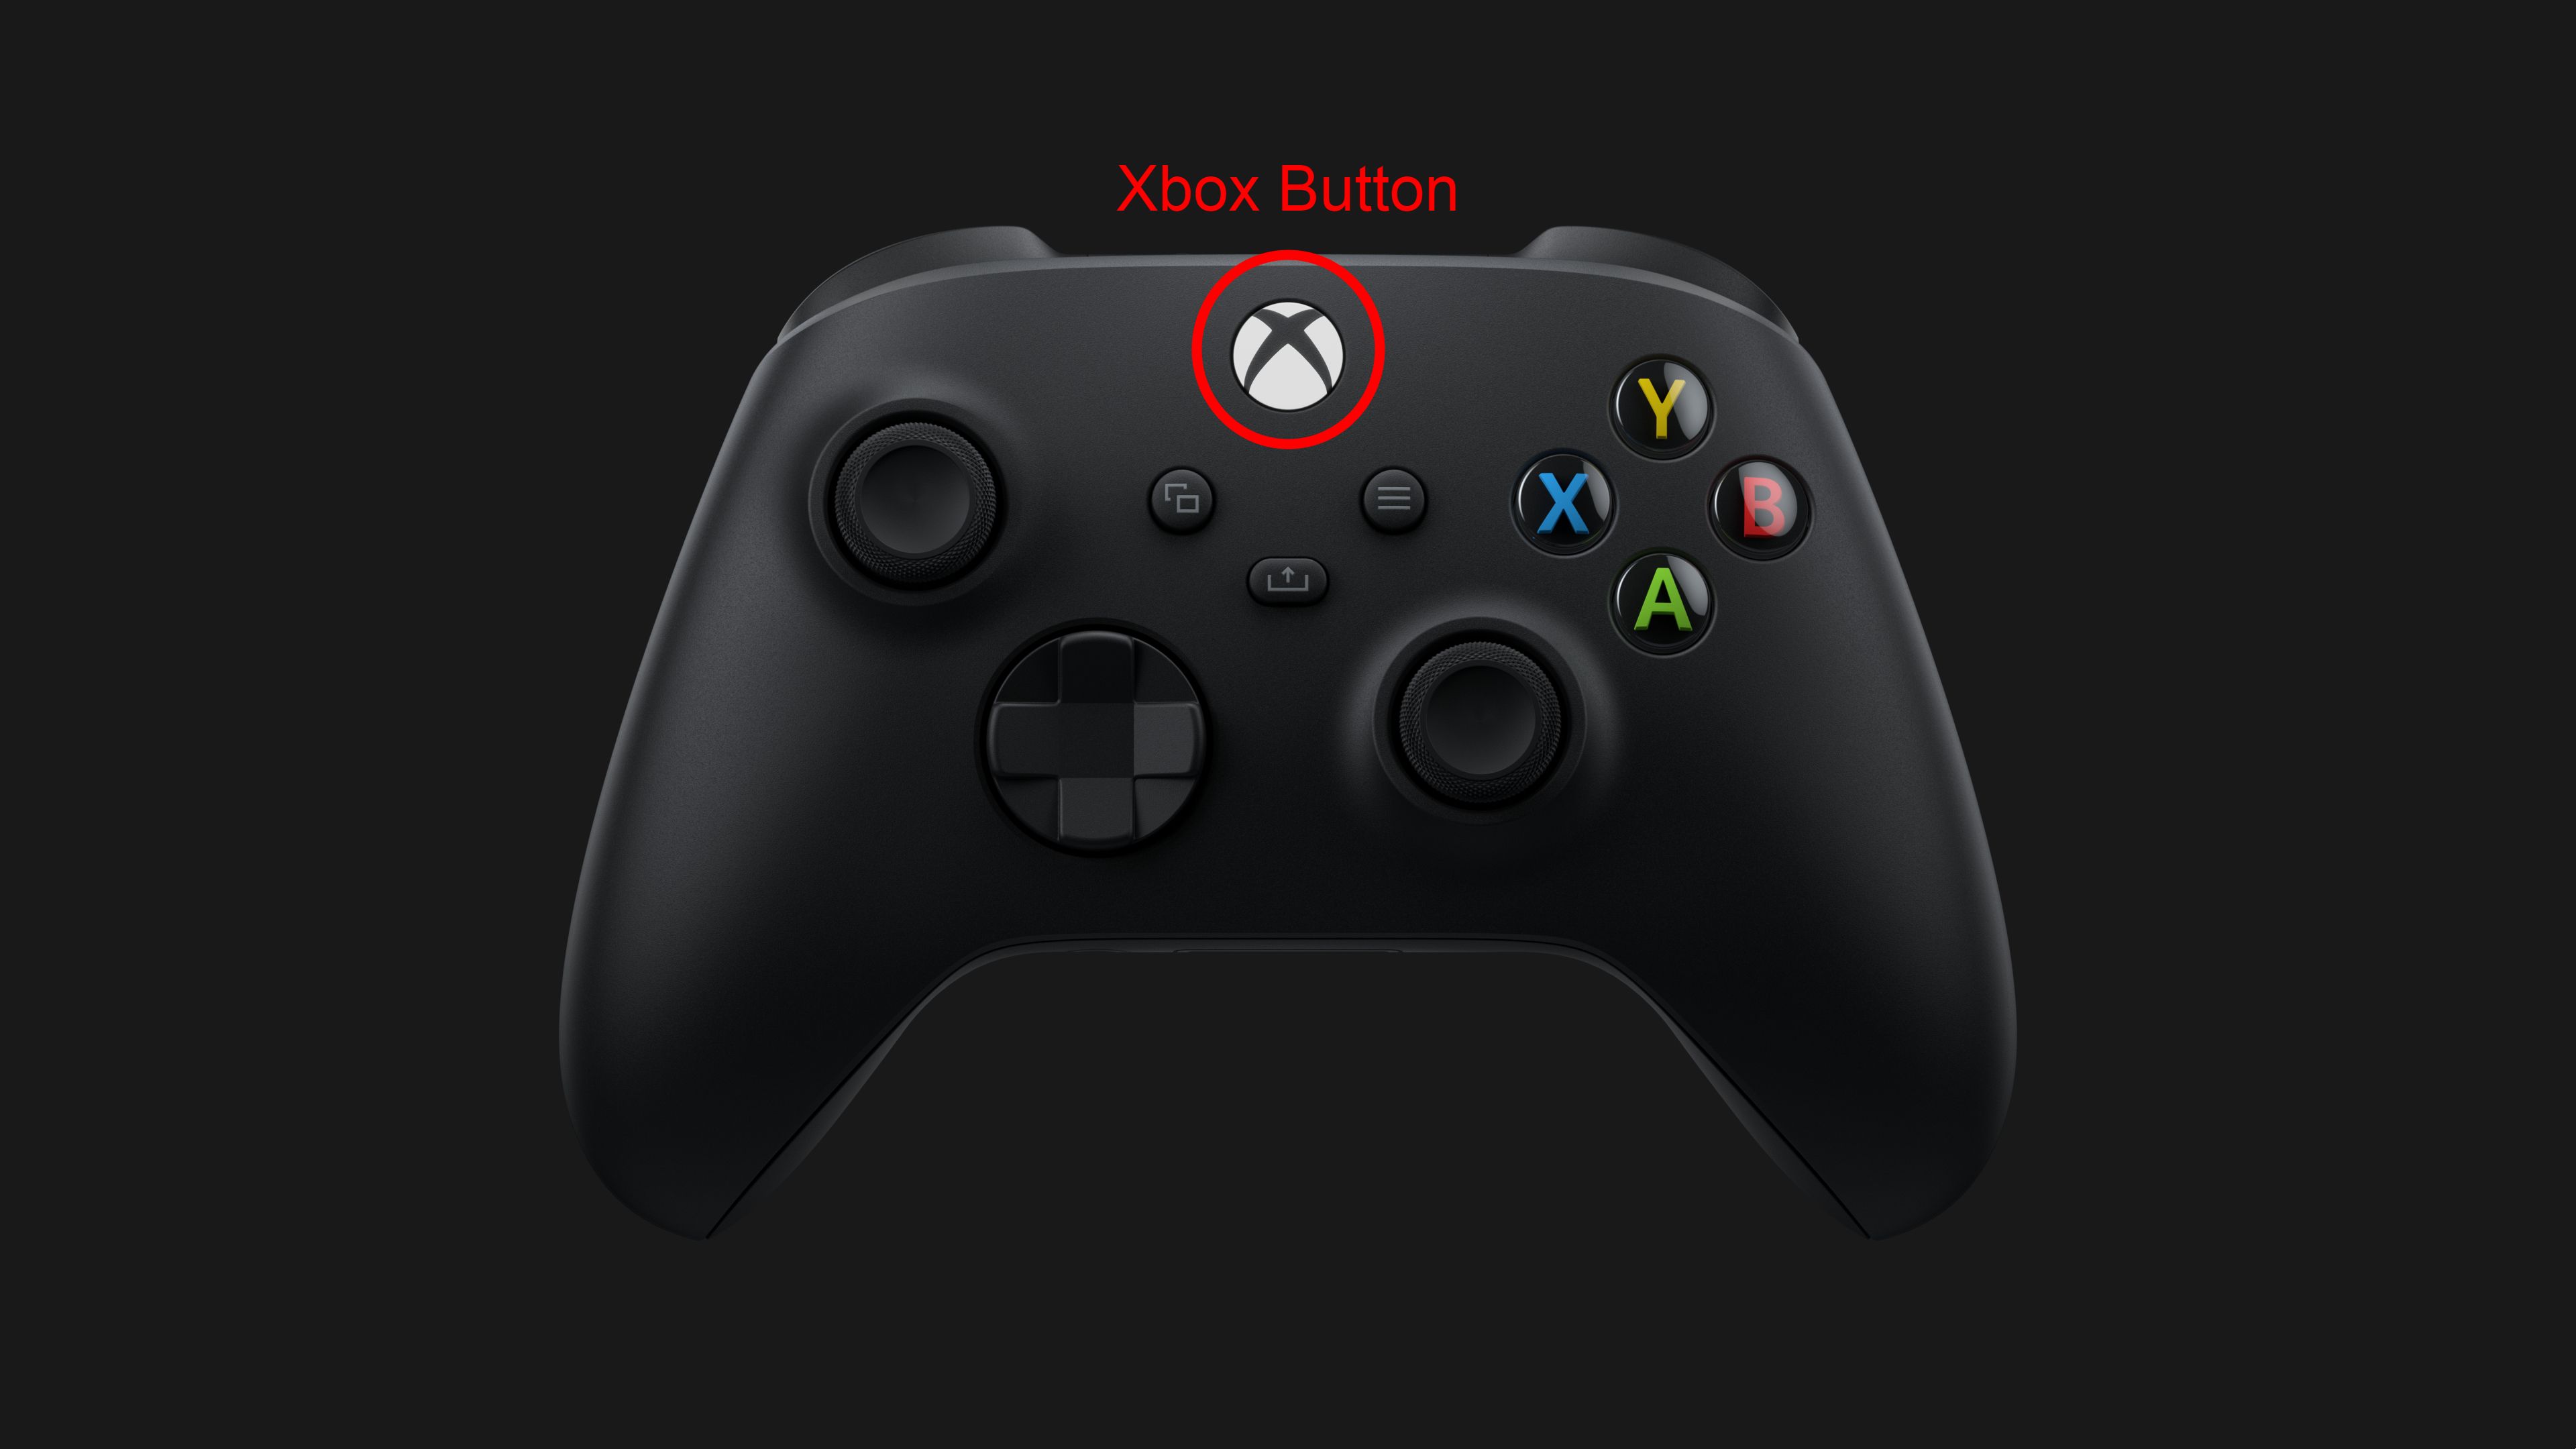 Arte oficial do controle do Xbox com o botão do Xbox marcado